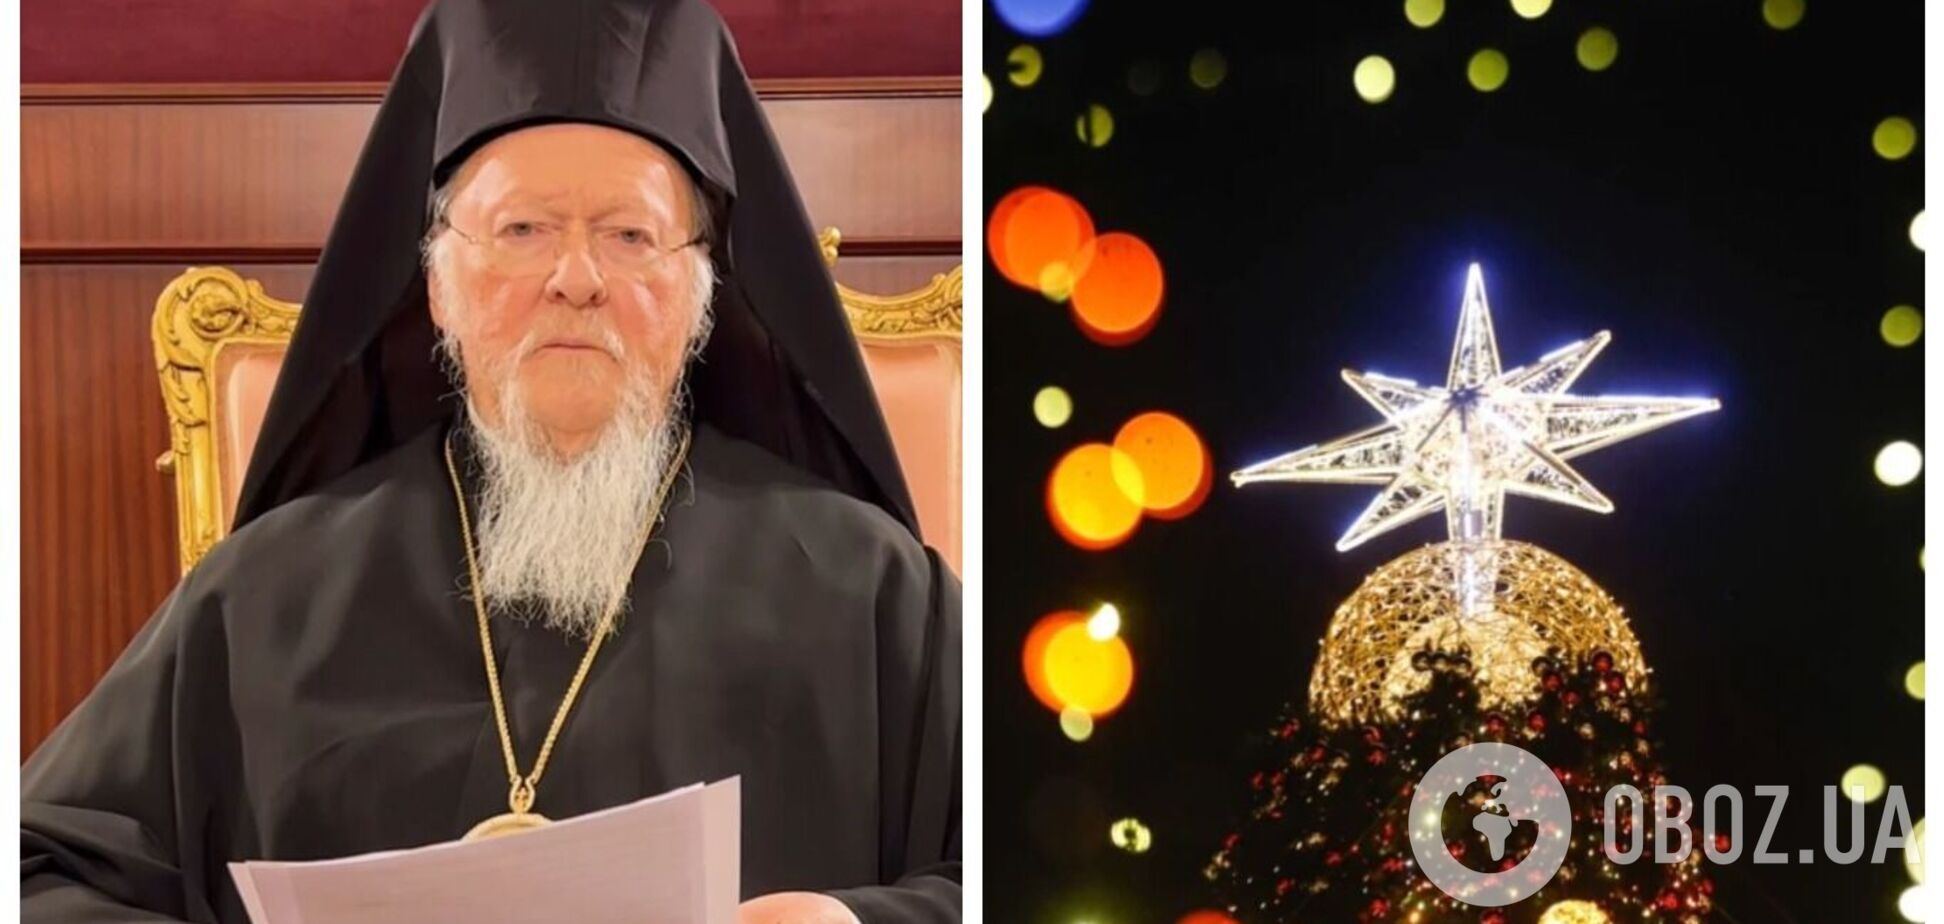 Патриарх Варфоломей поздравил украинцев с Рождеством и заявил, что агрессии России не может быть оправдания. Видео